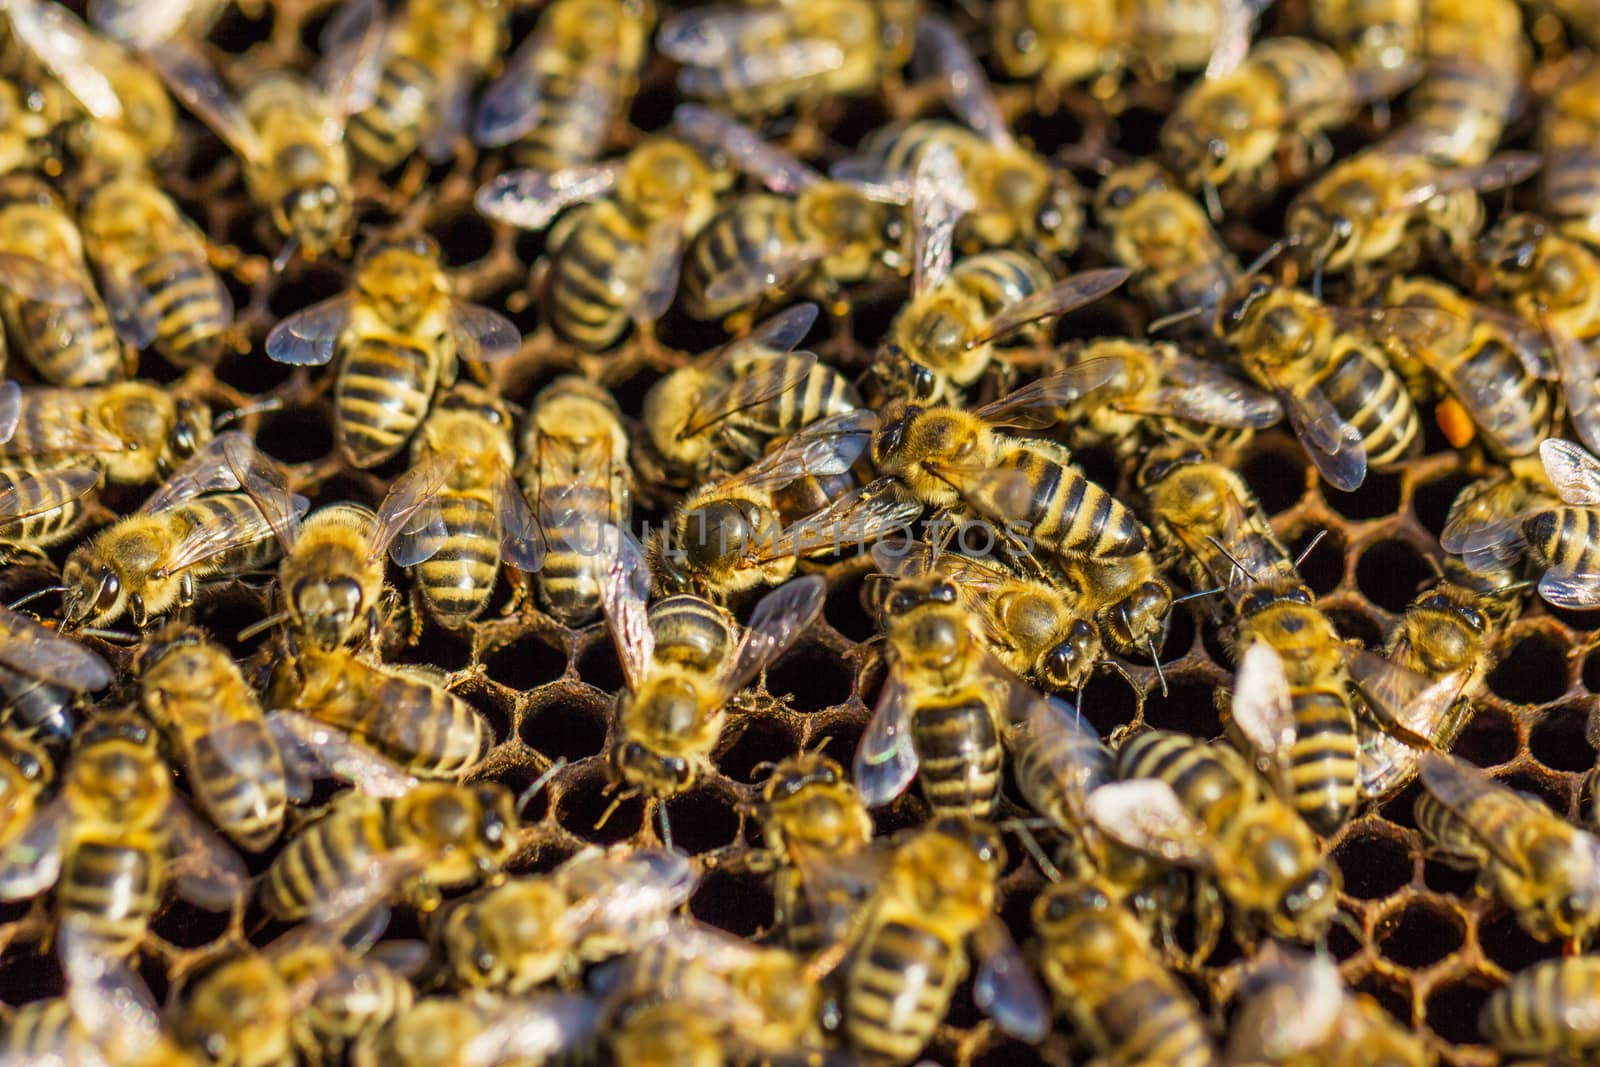 Working bees. Beekeeping